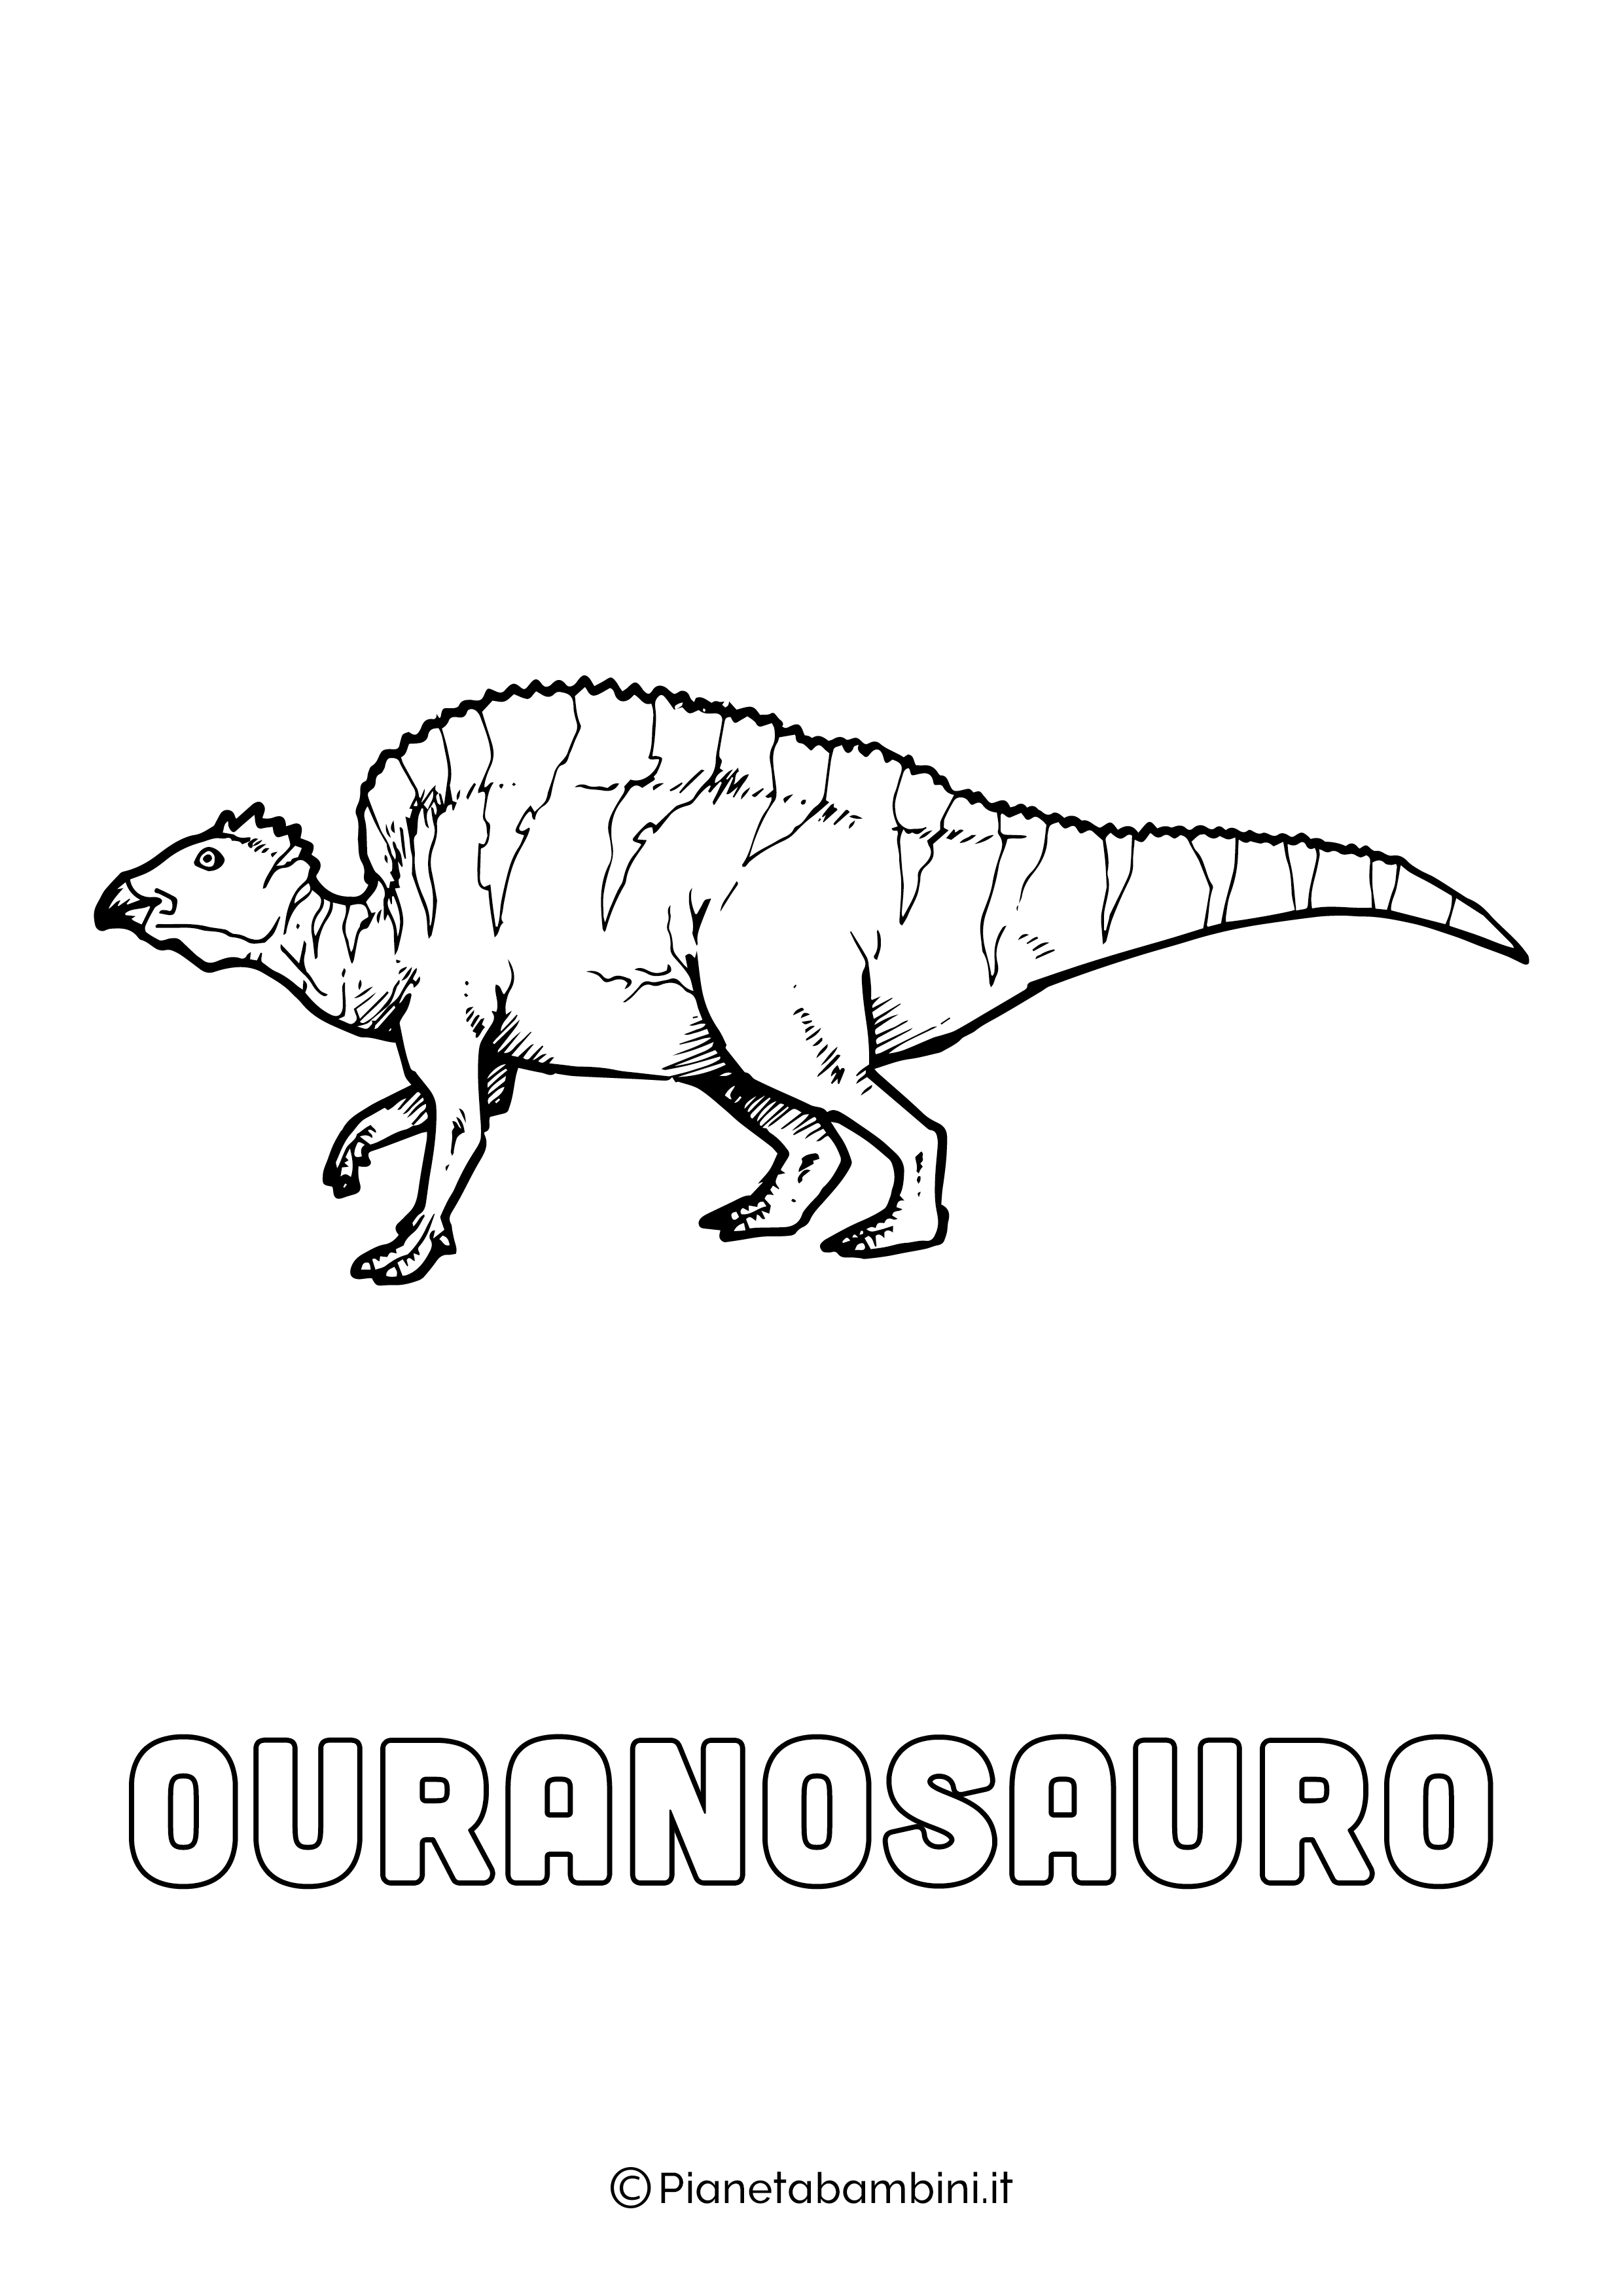 Dinosauro Ouranosauro da colorare